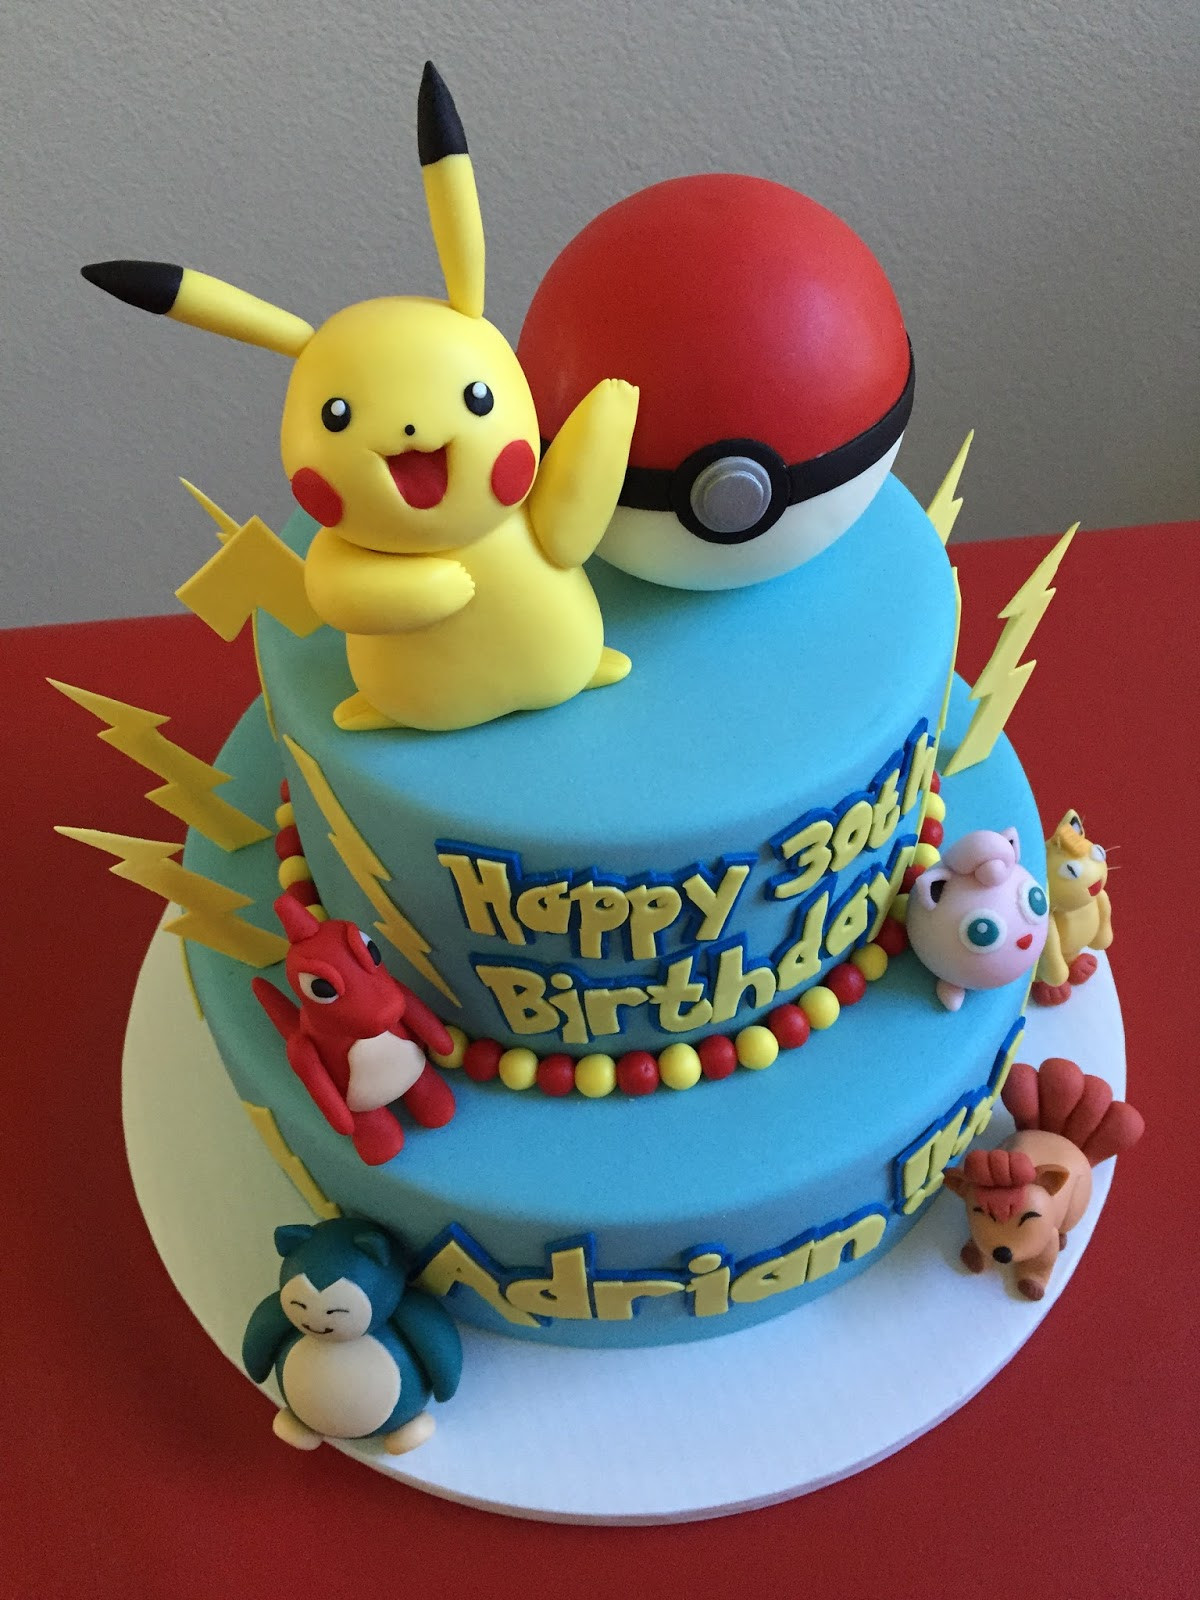 Pikachu Birthday Cake
 The Pokemon Pikachu Cake